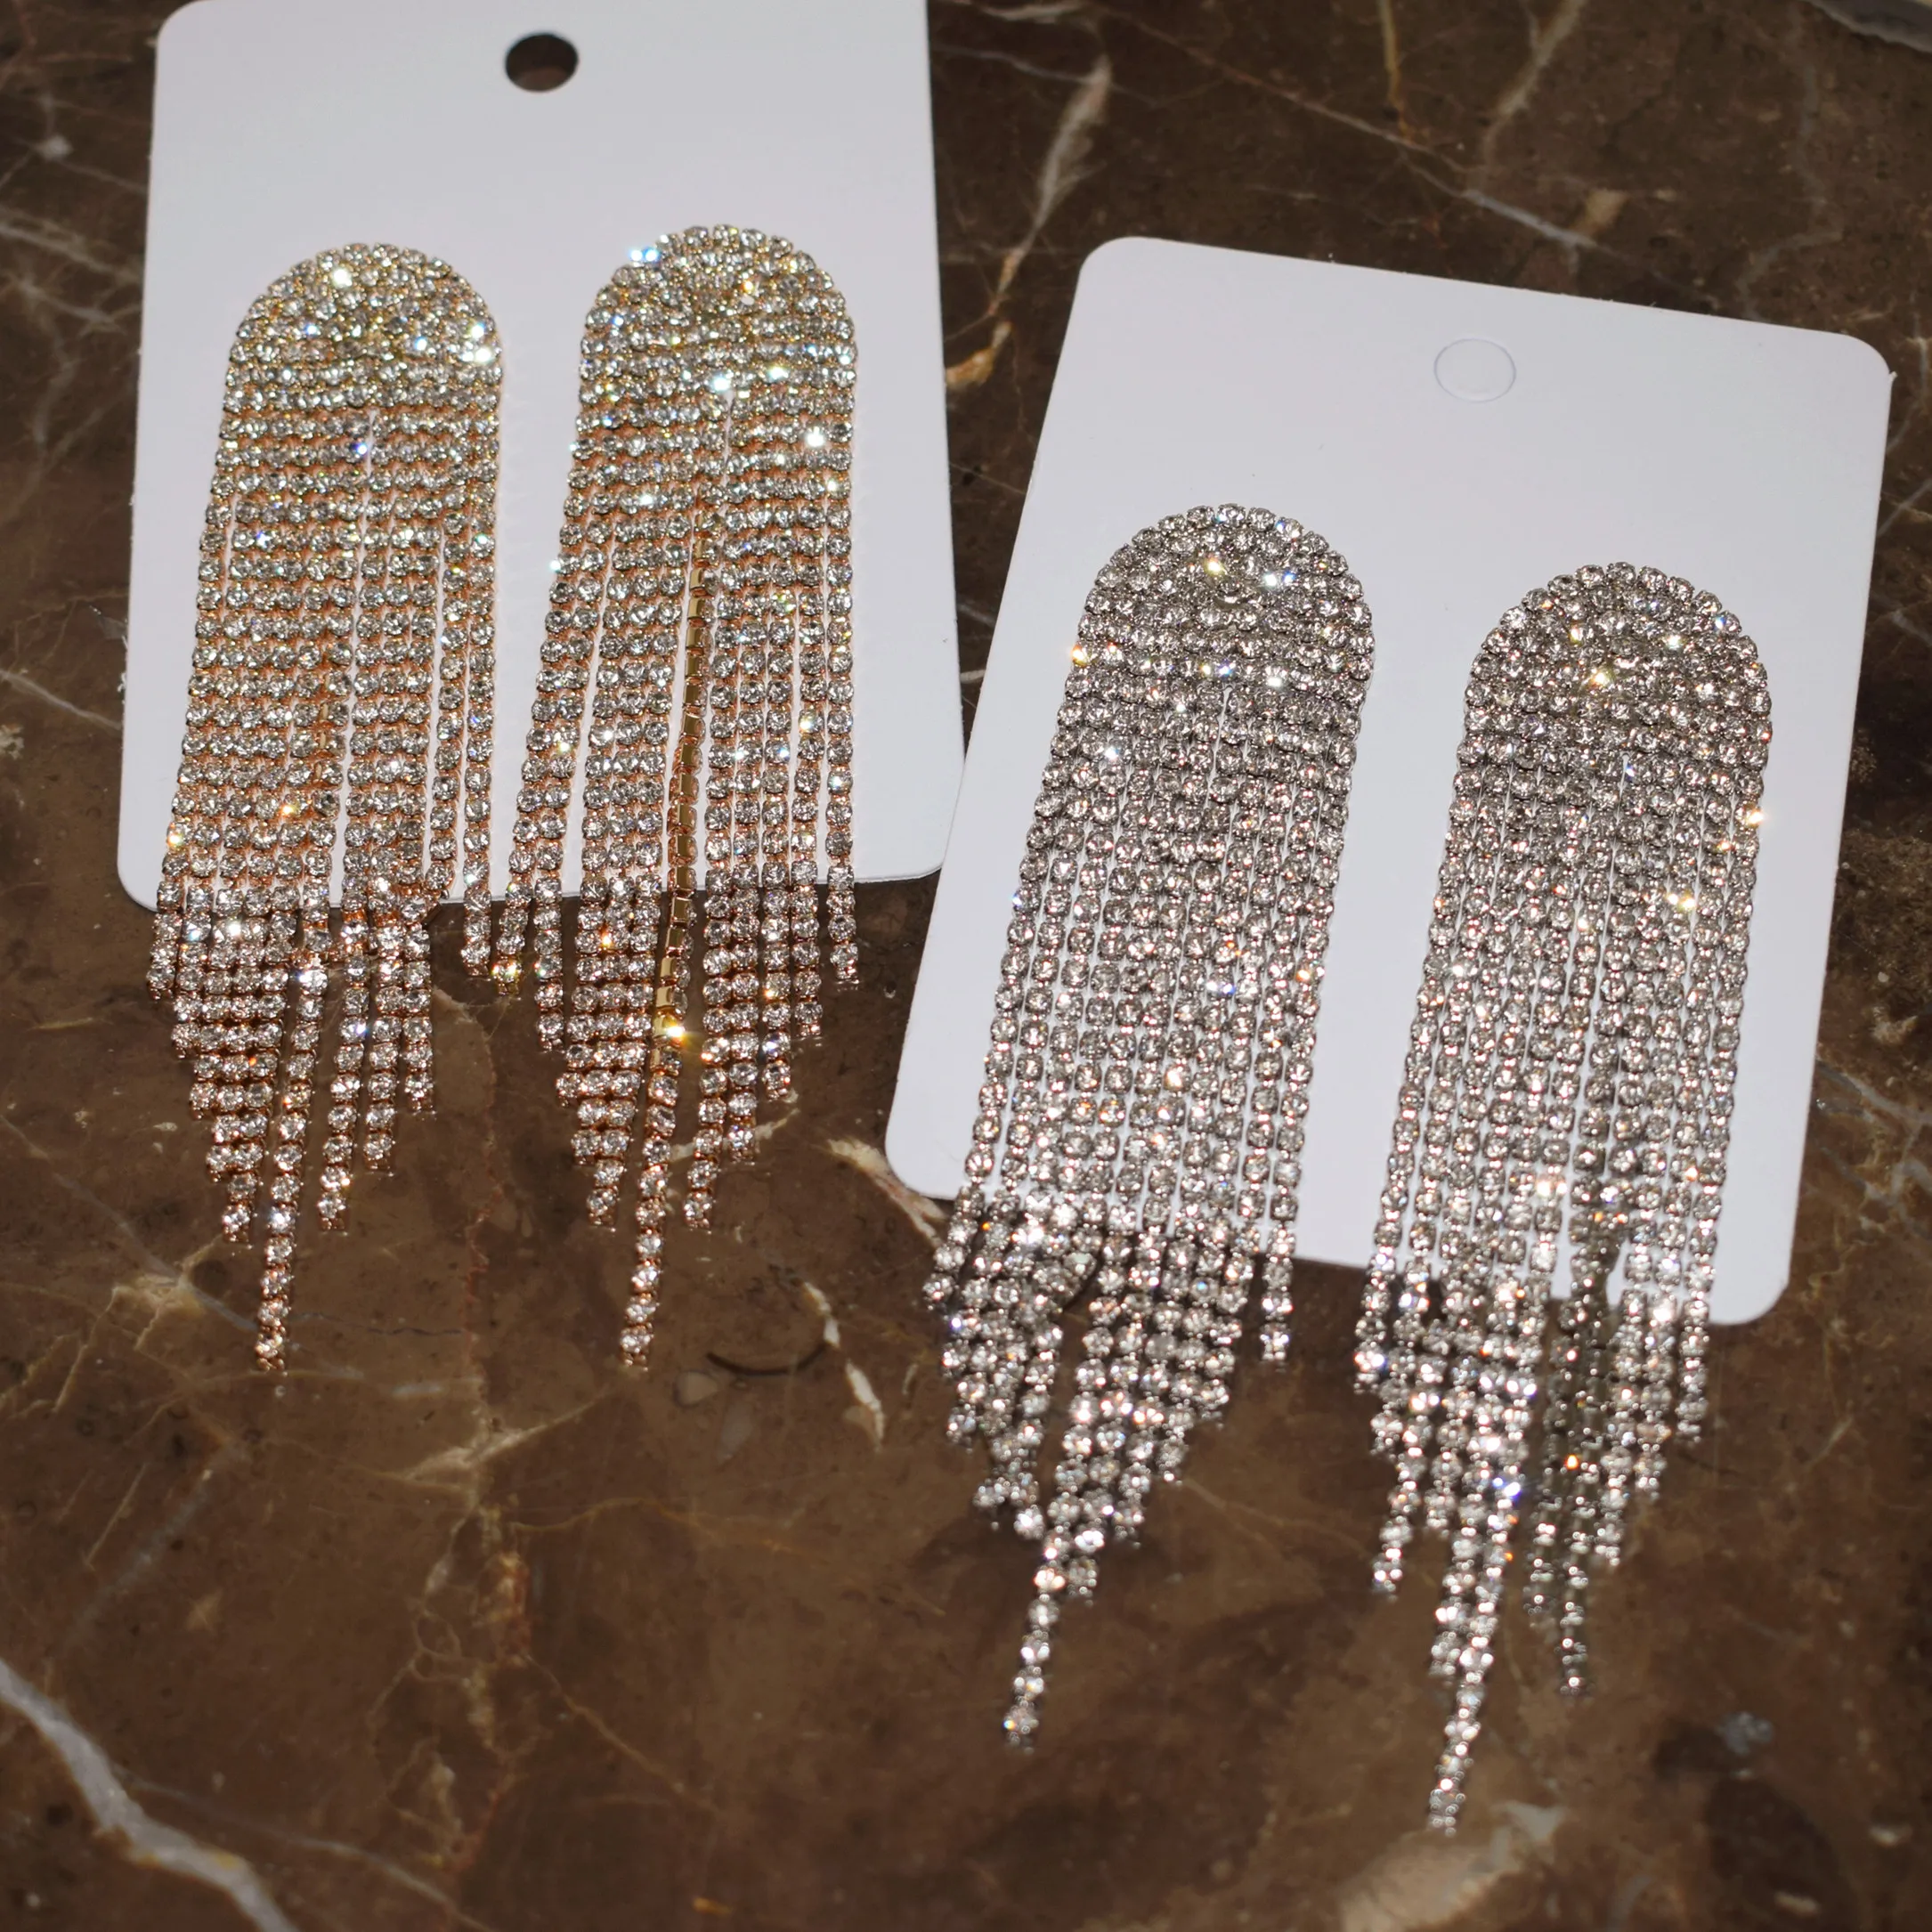 

Geogous Shiny Rhinestone Tassel Dangle Earrings For Women Fashion Jewelry Bridal Wedding Statement Earrings Accessories Hot Sale